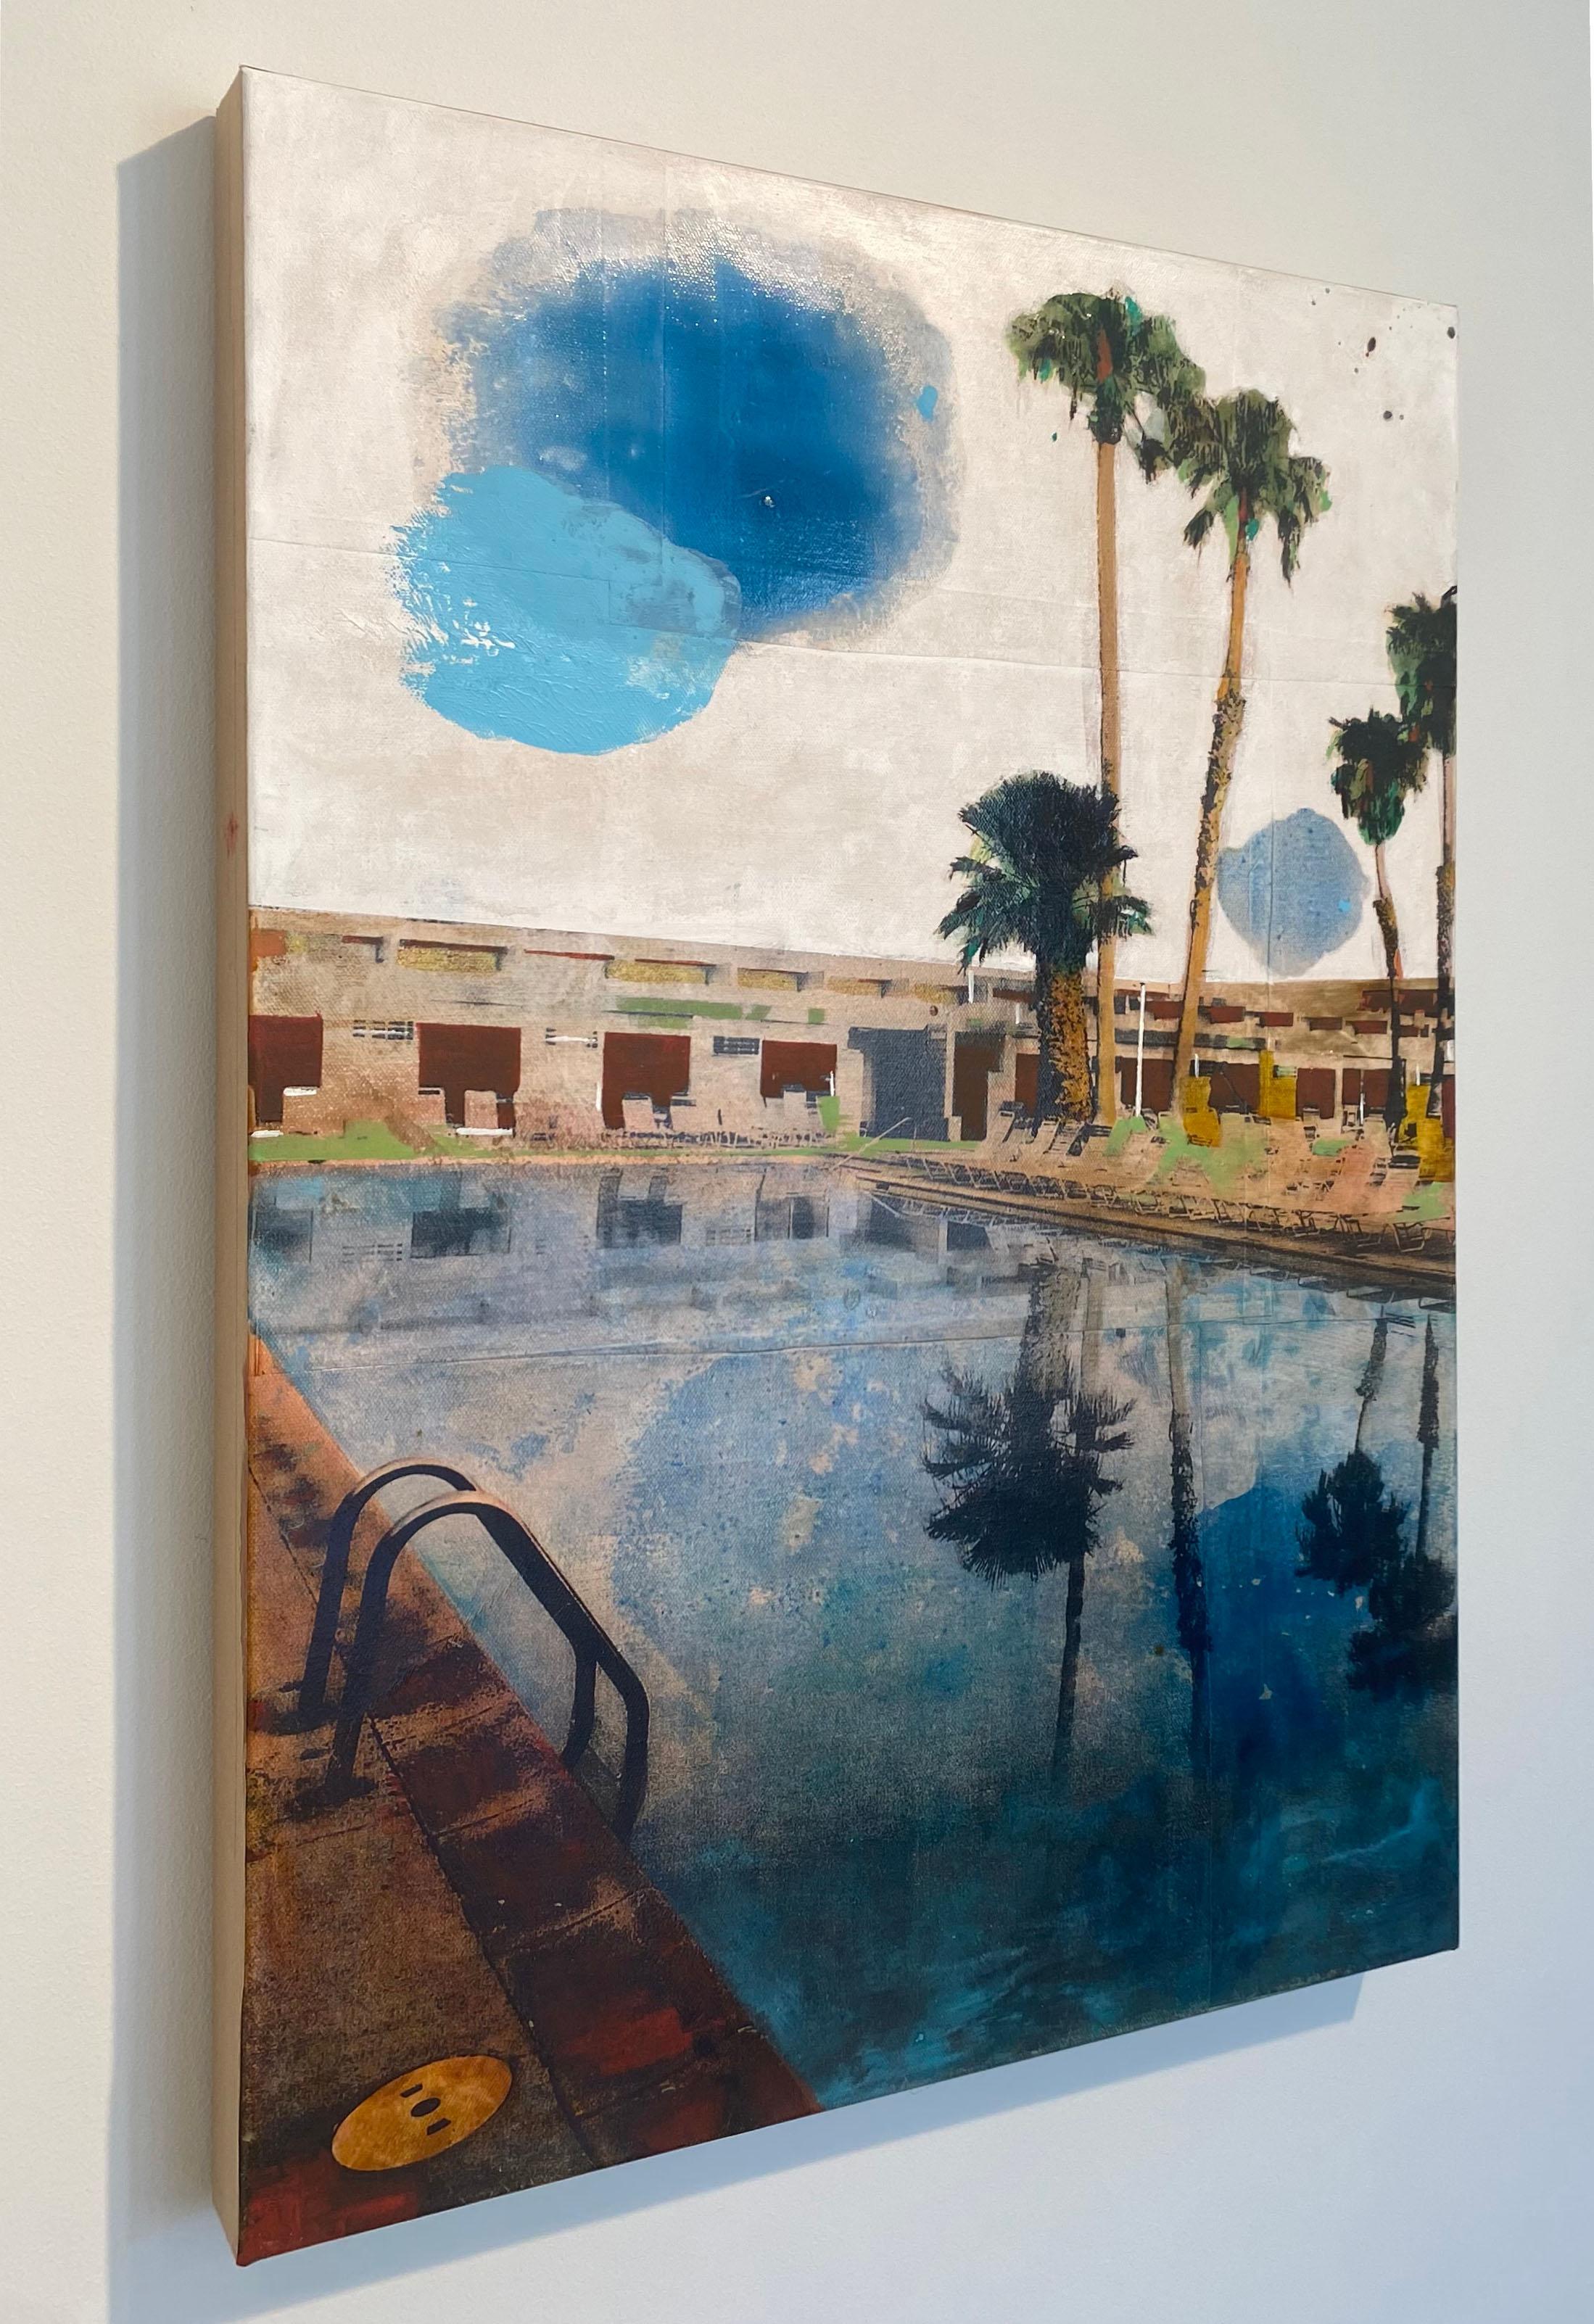 Miroir de palmier -  un reflet californien d'arbres de palmier dans une piscine - Contemporain Painting par Ayline Olukman